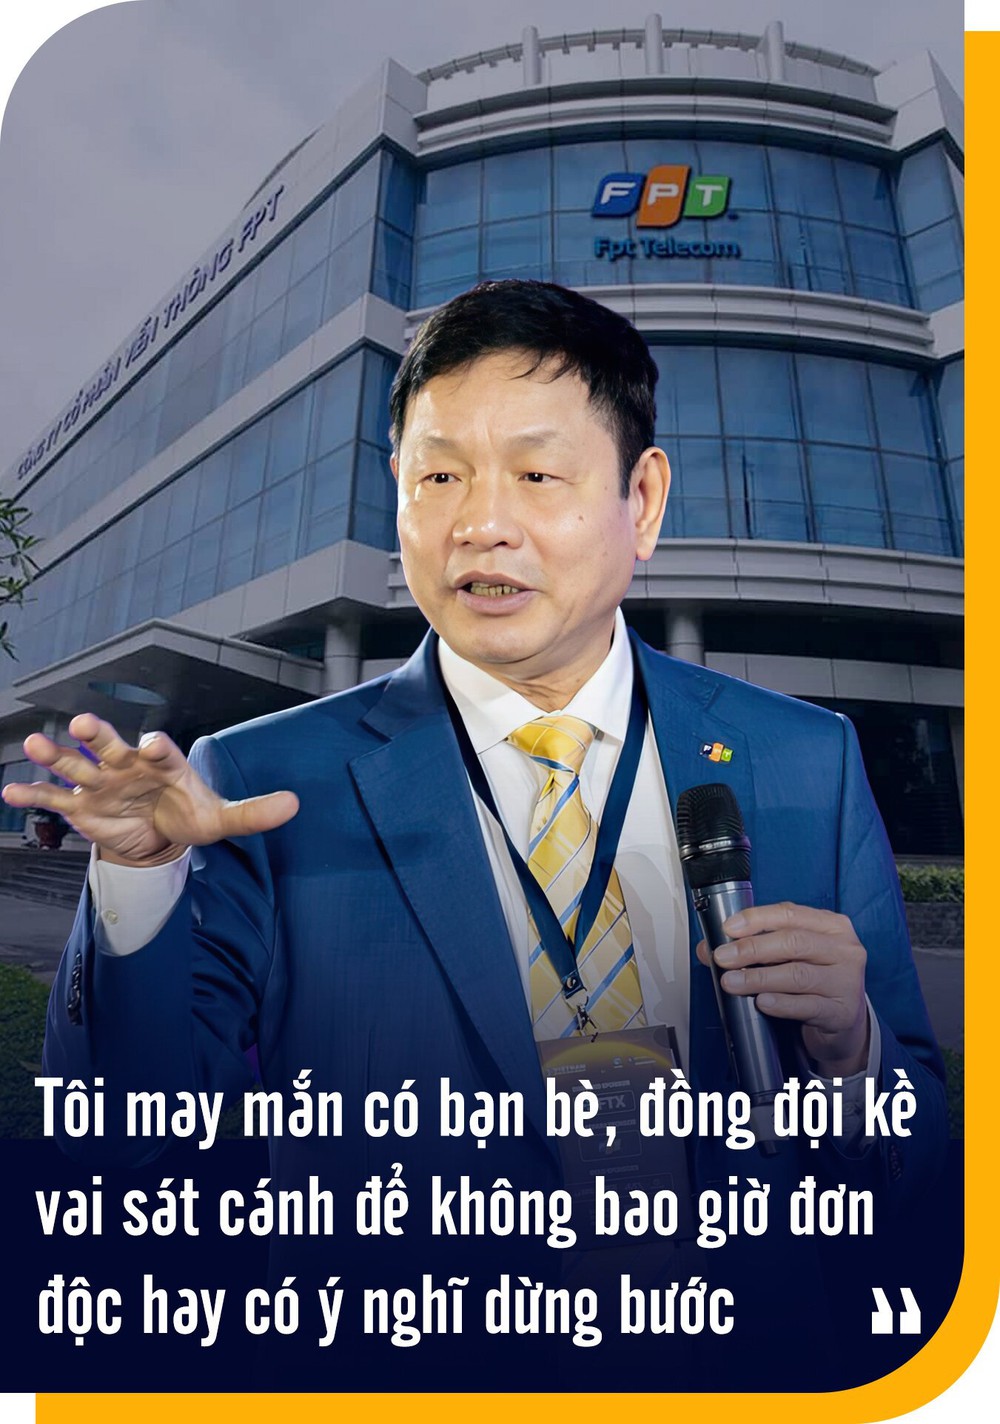 Việc chính của Chủ tịch FPT Trương Gia Bình: Đi bán hàng - Ảnh 15.